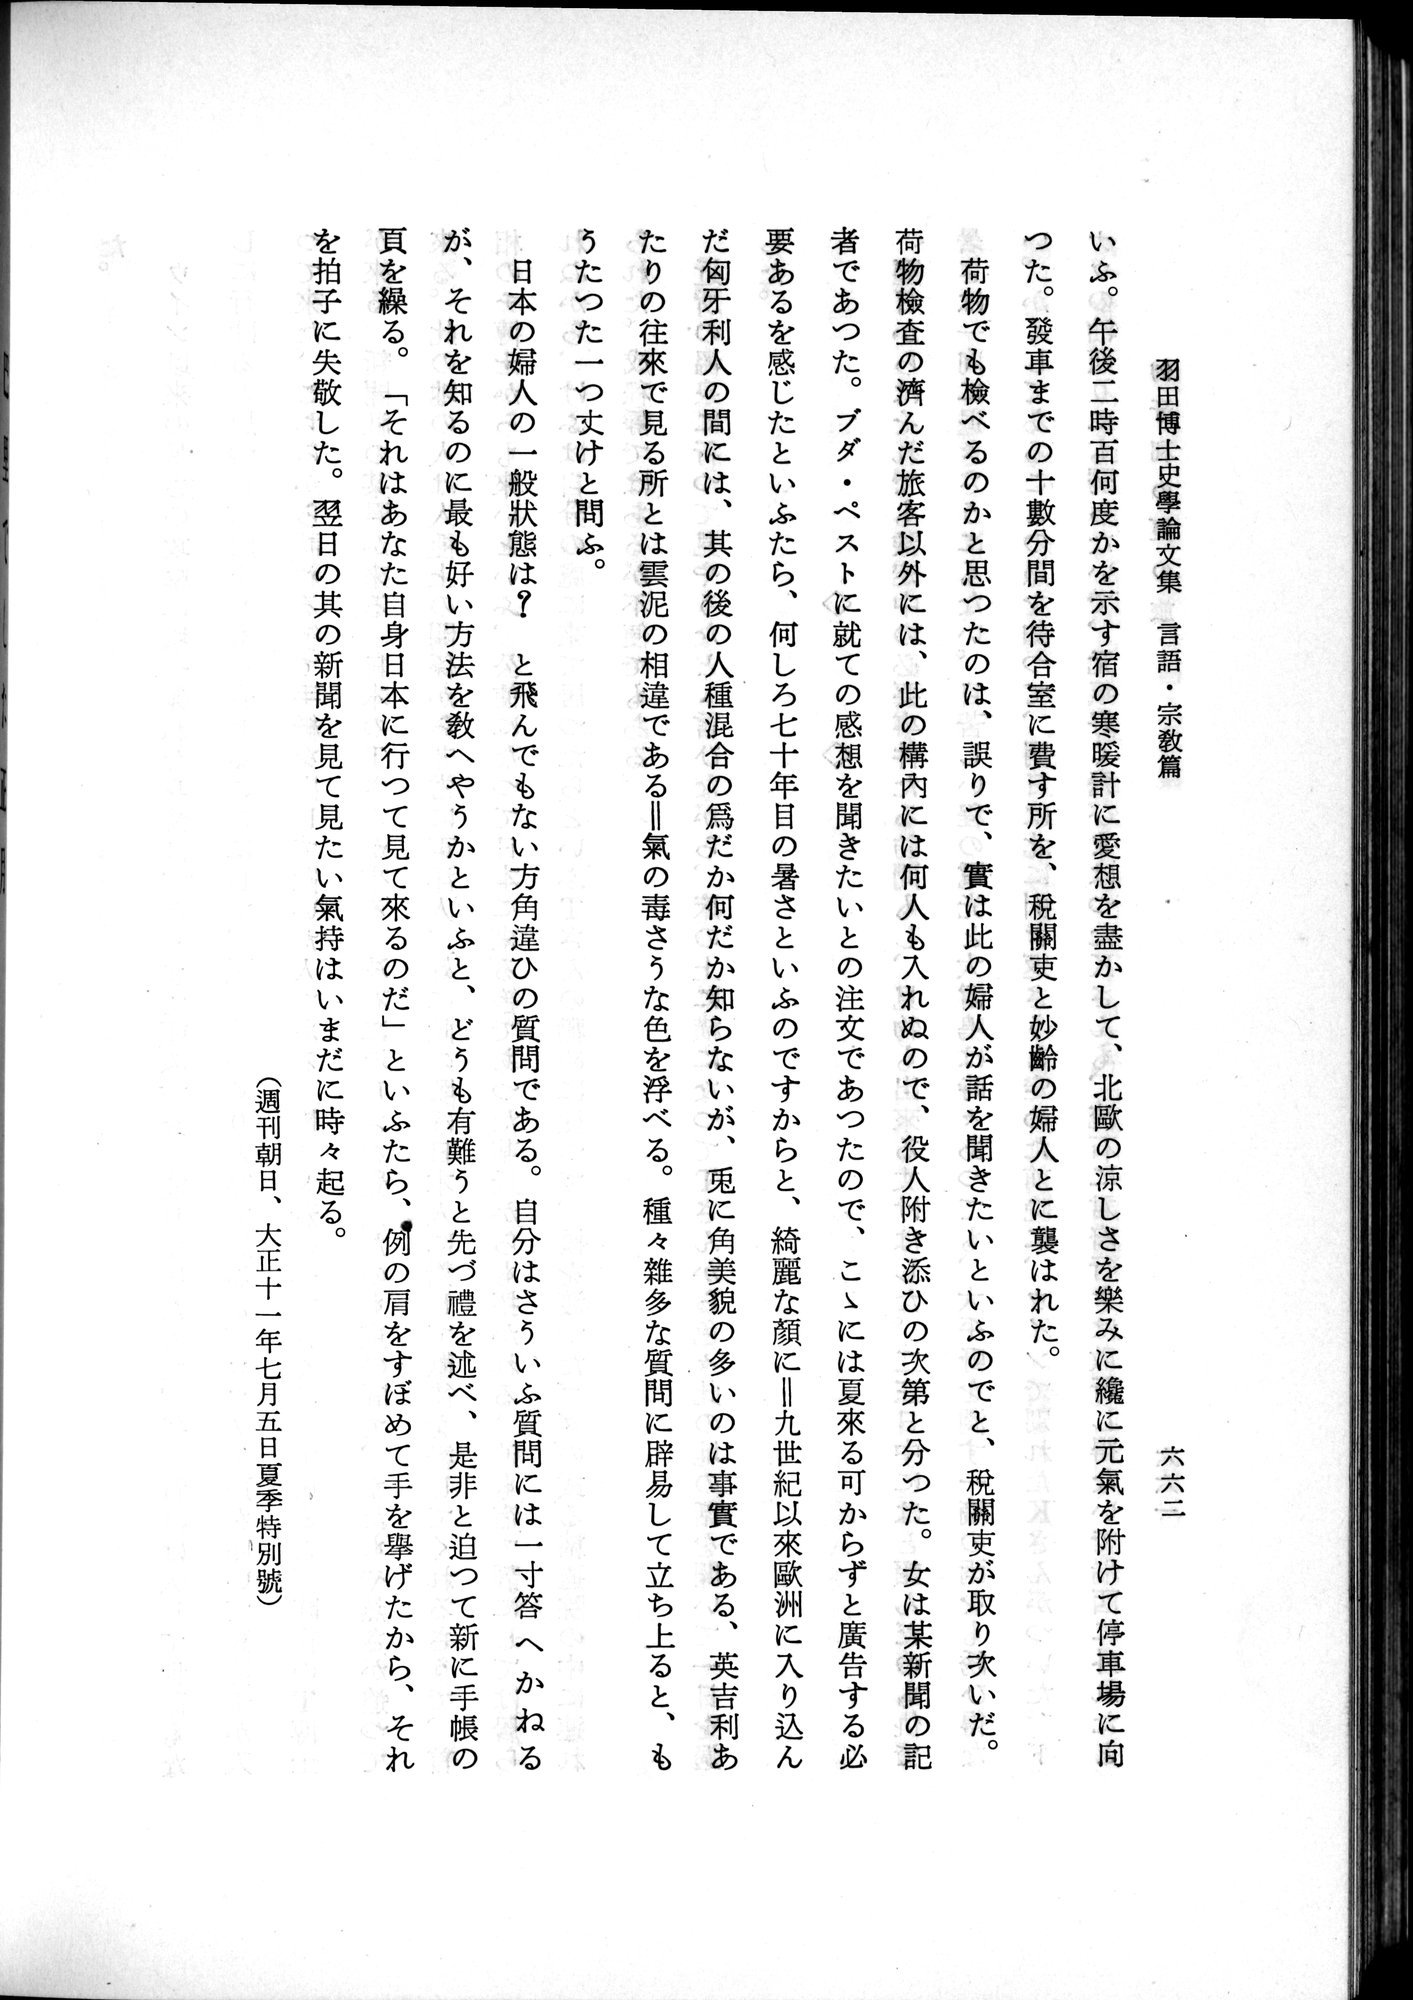 羽田博士史学論文集 : vol.2 / Page 726 (Grayscale High Resolution Image)